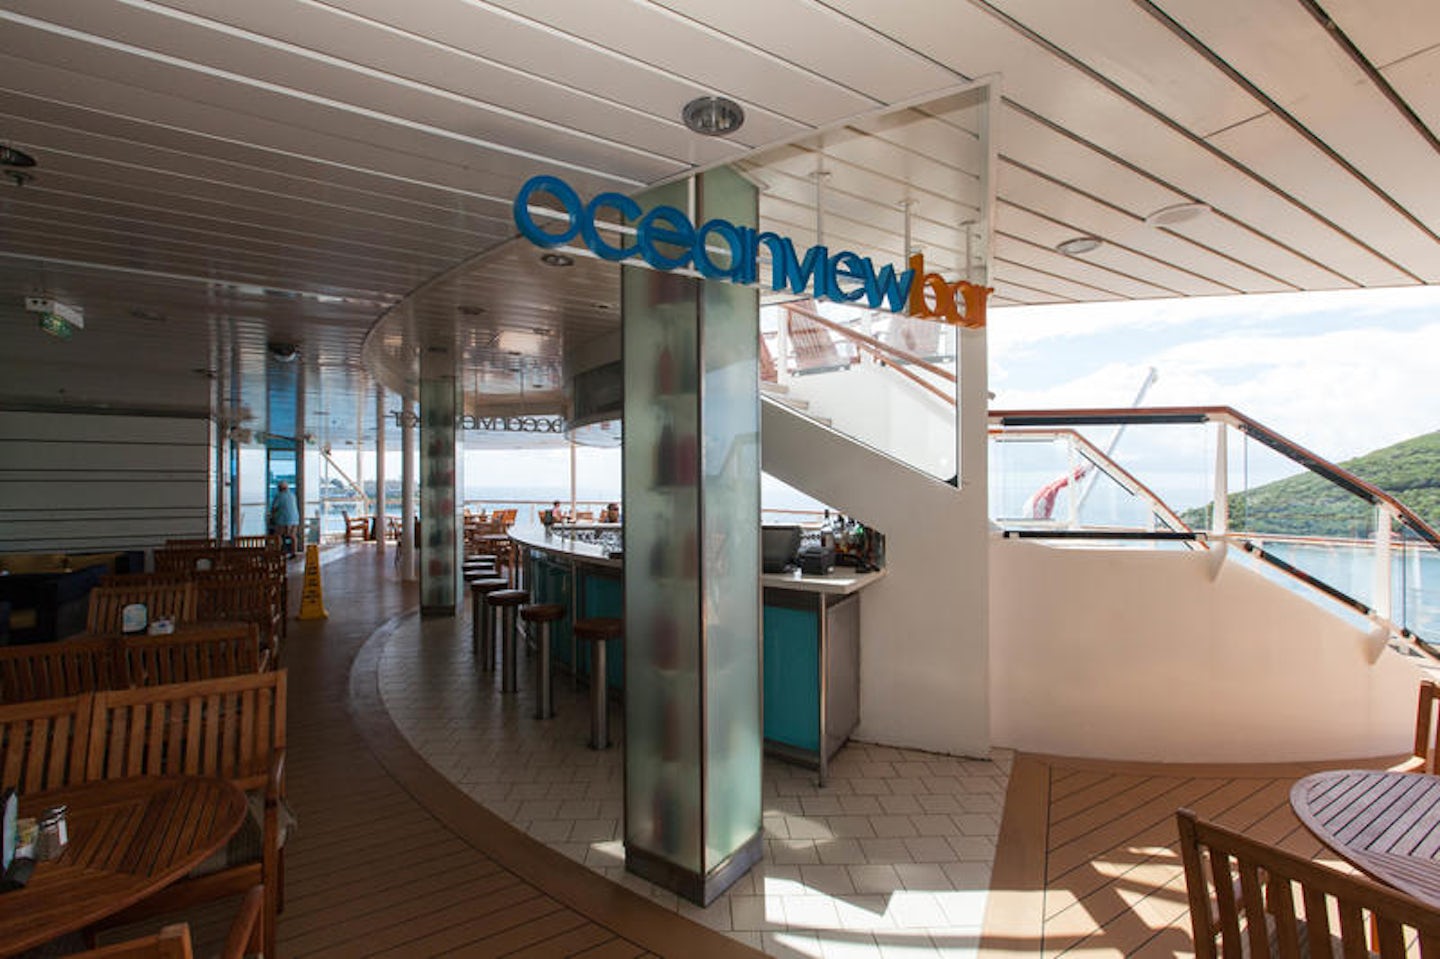 Oceanview Bar on Celebrity Equinox